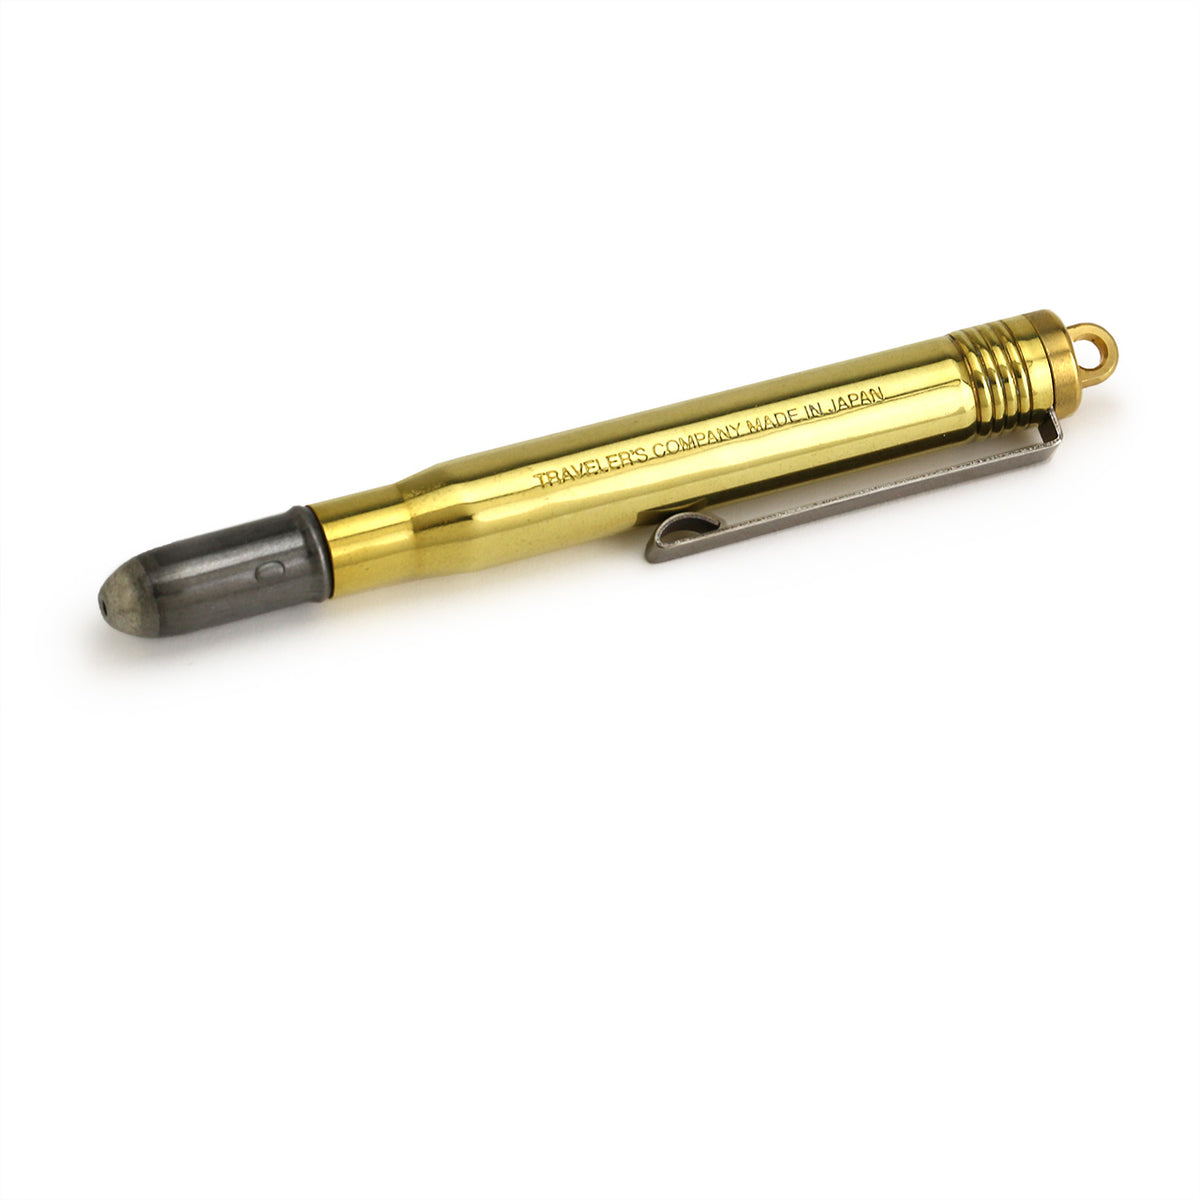 Brass ballpoint pen in compact mode